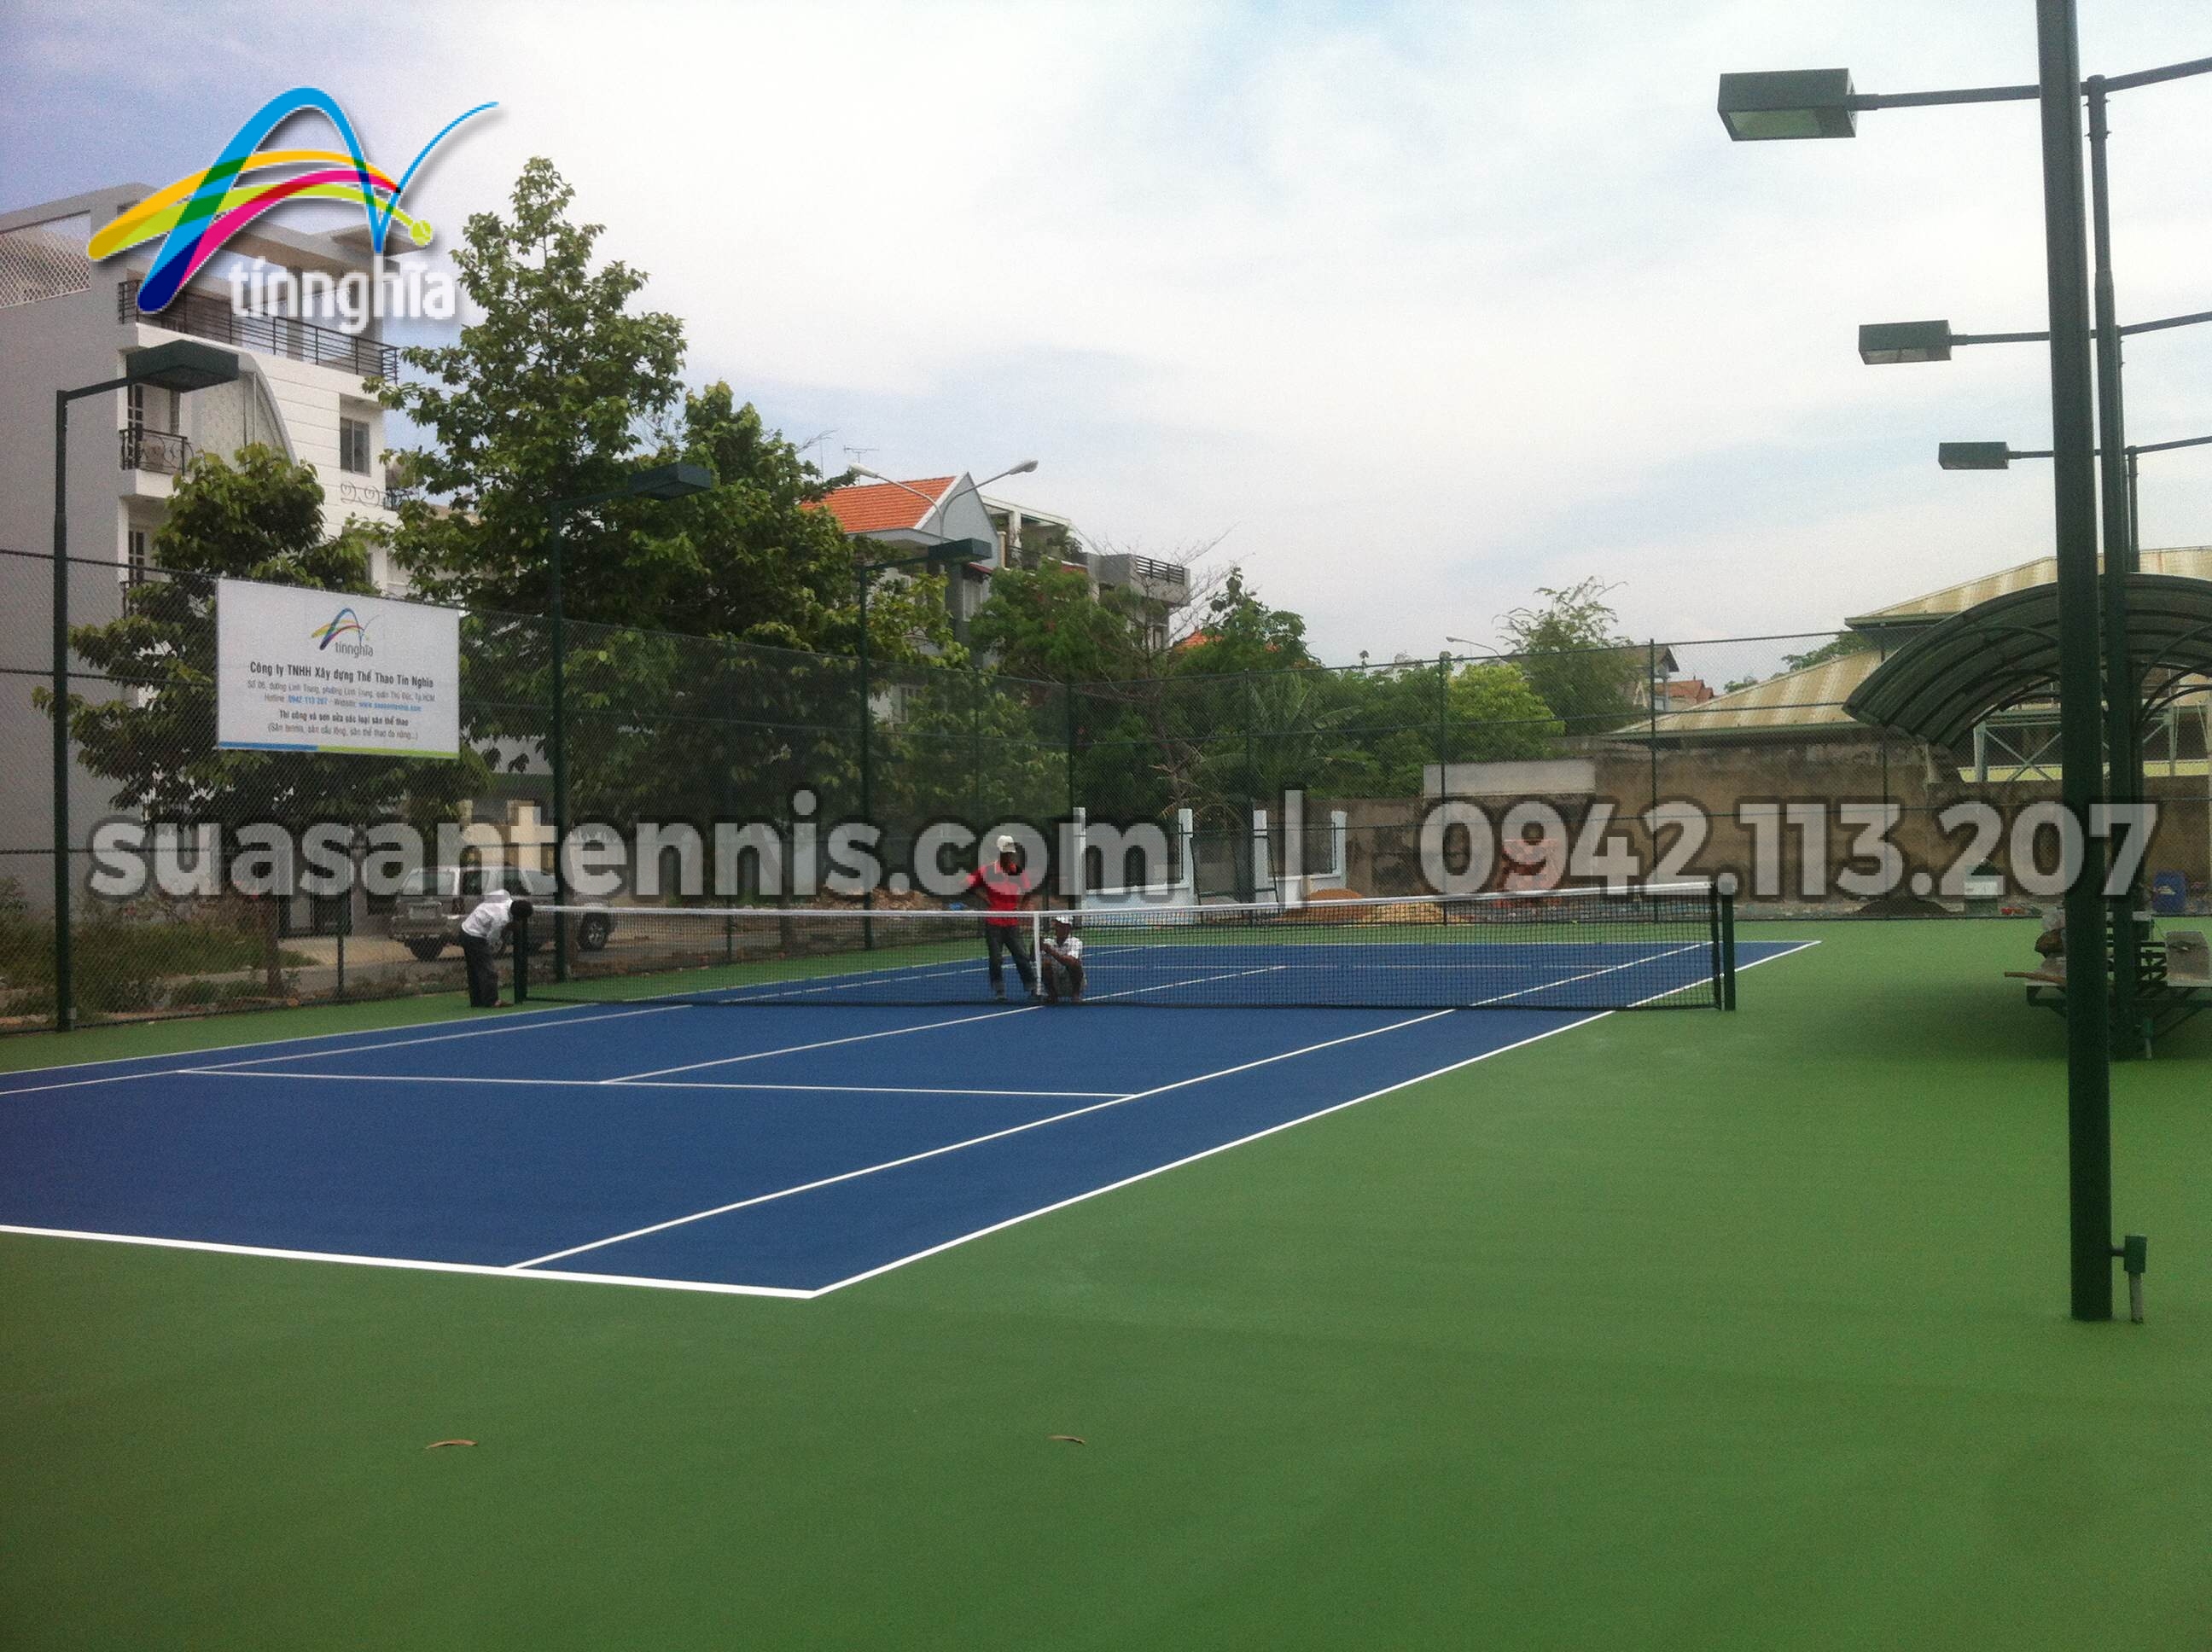 Construct 2 Tennis Courts "Ca Sau Hoa Ca" - April 2015